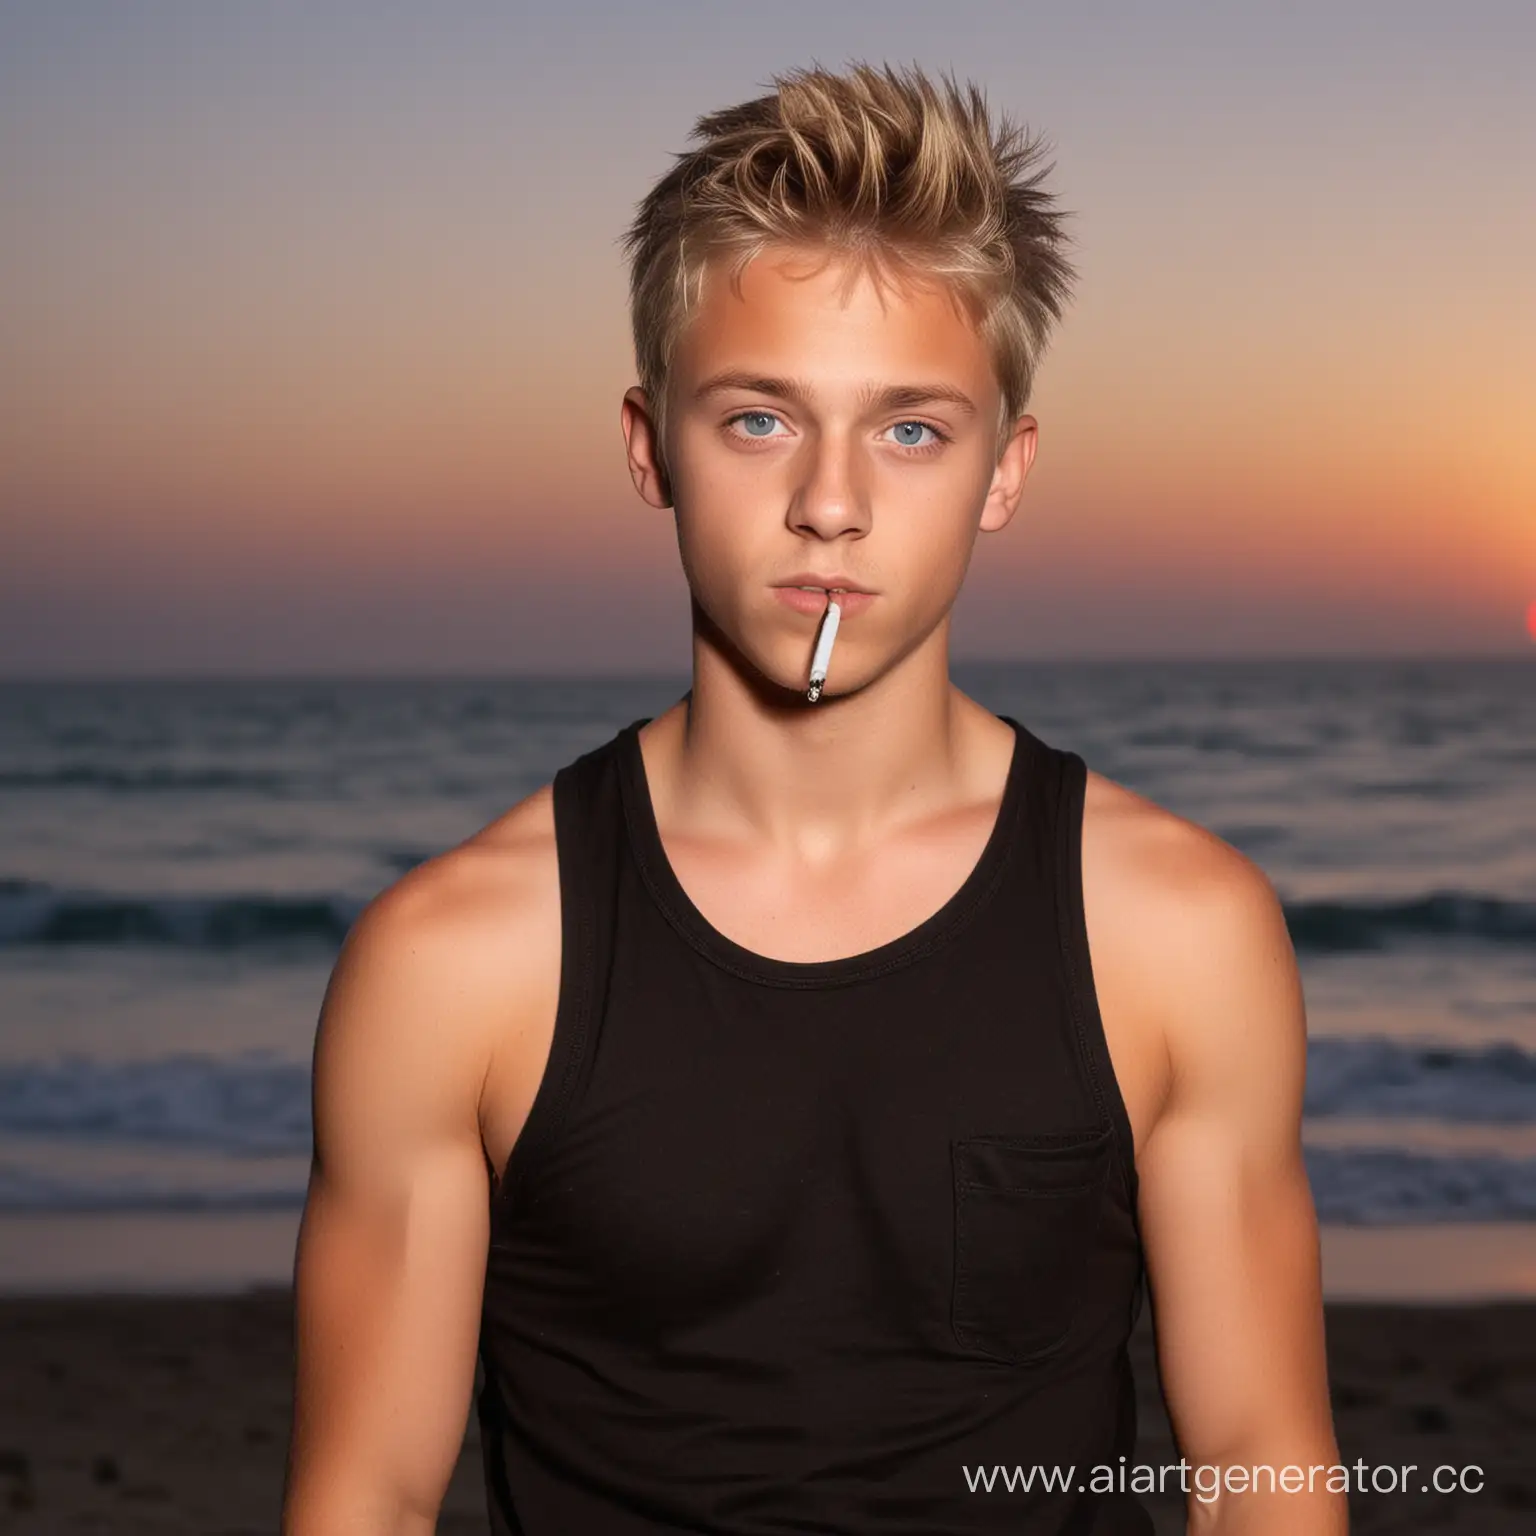 Serious-Blonde-Boy-Smoking-at-Beach-Sunset